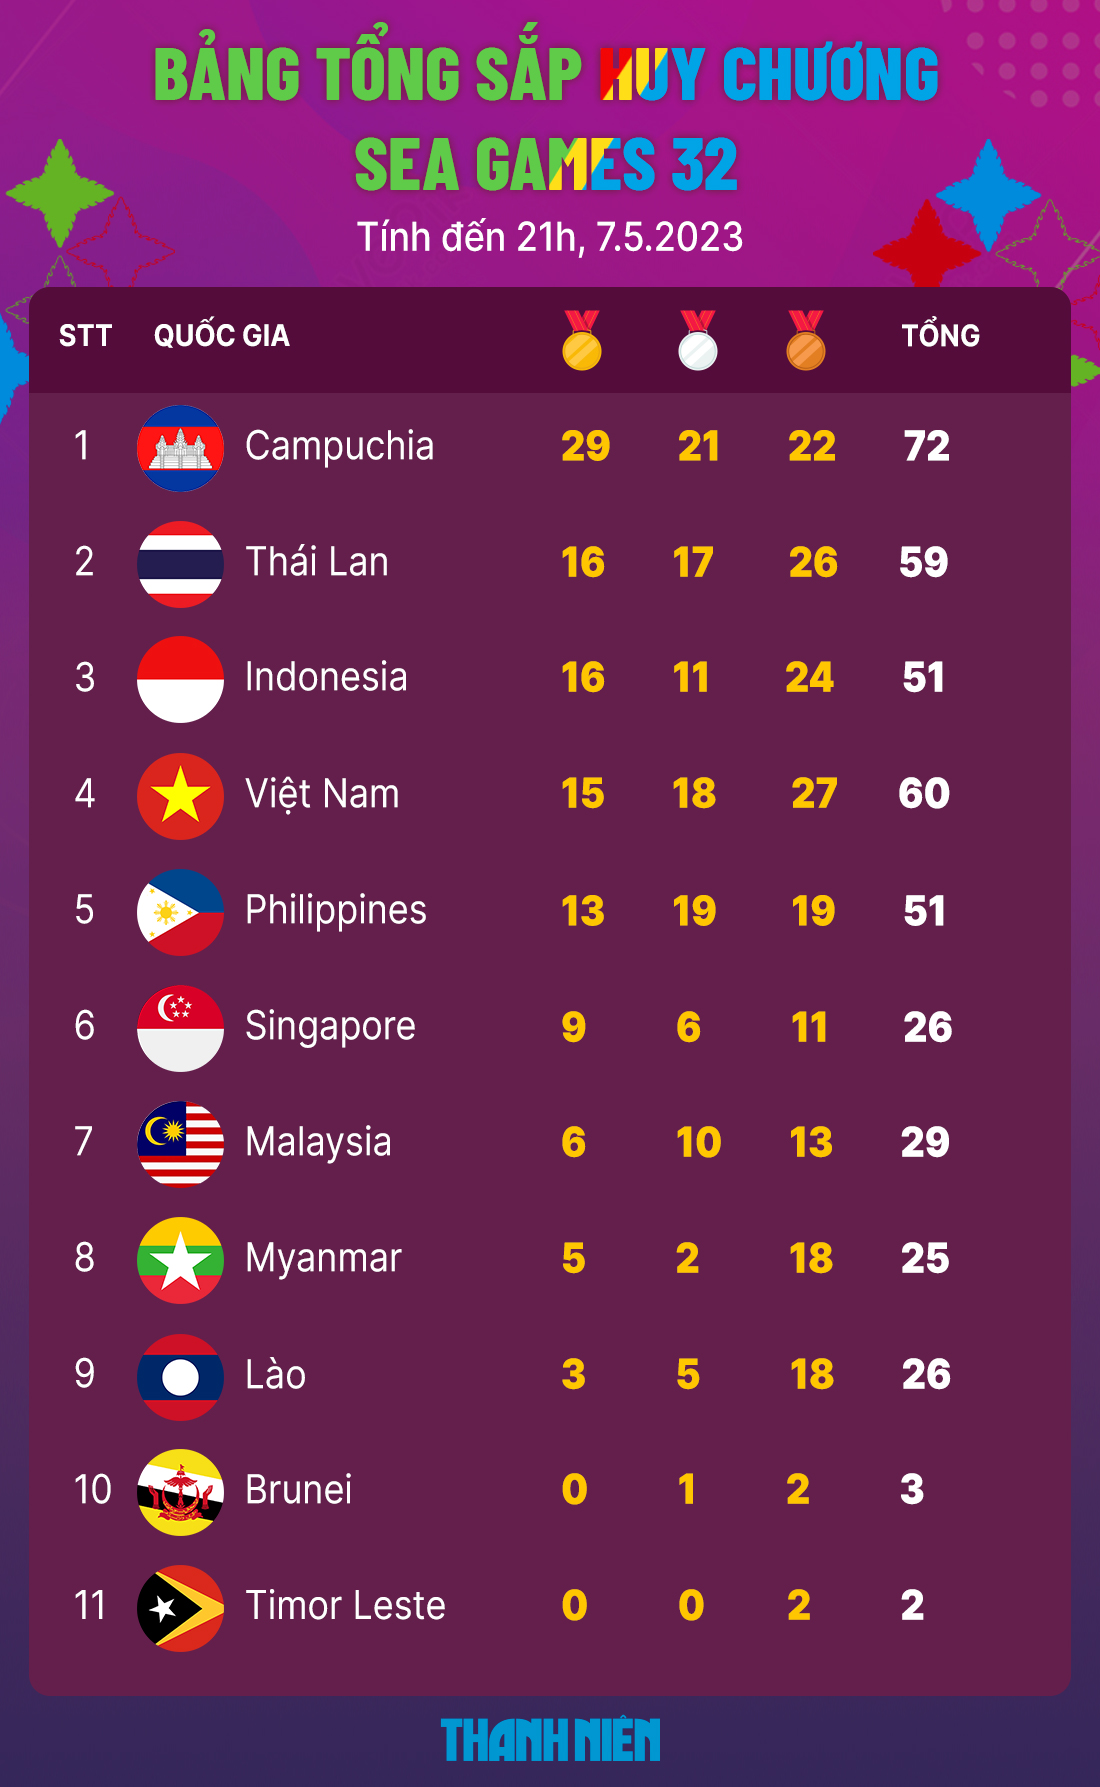 BXH huy chương và thành tích thể thao Việt Nam SEA Games 32 ngày 7.5.2023, Campuchia dẫn đầu - Ảnh 2.